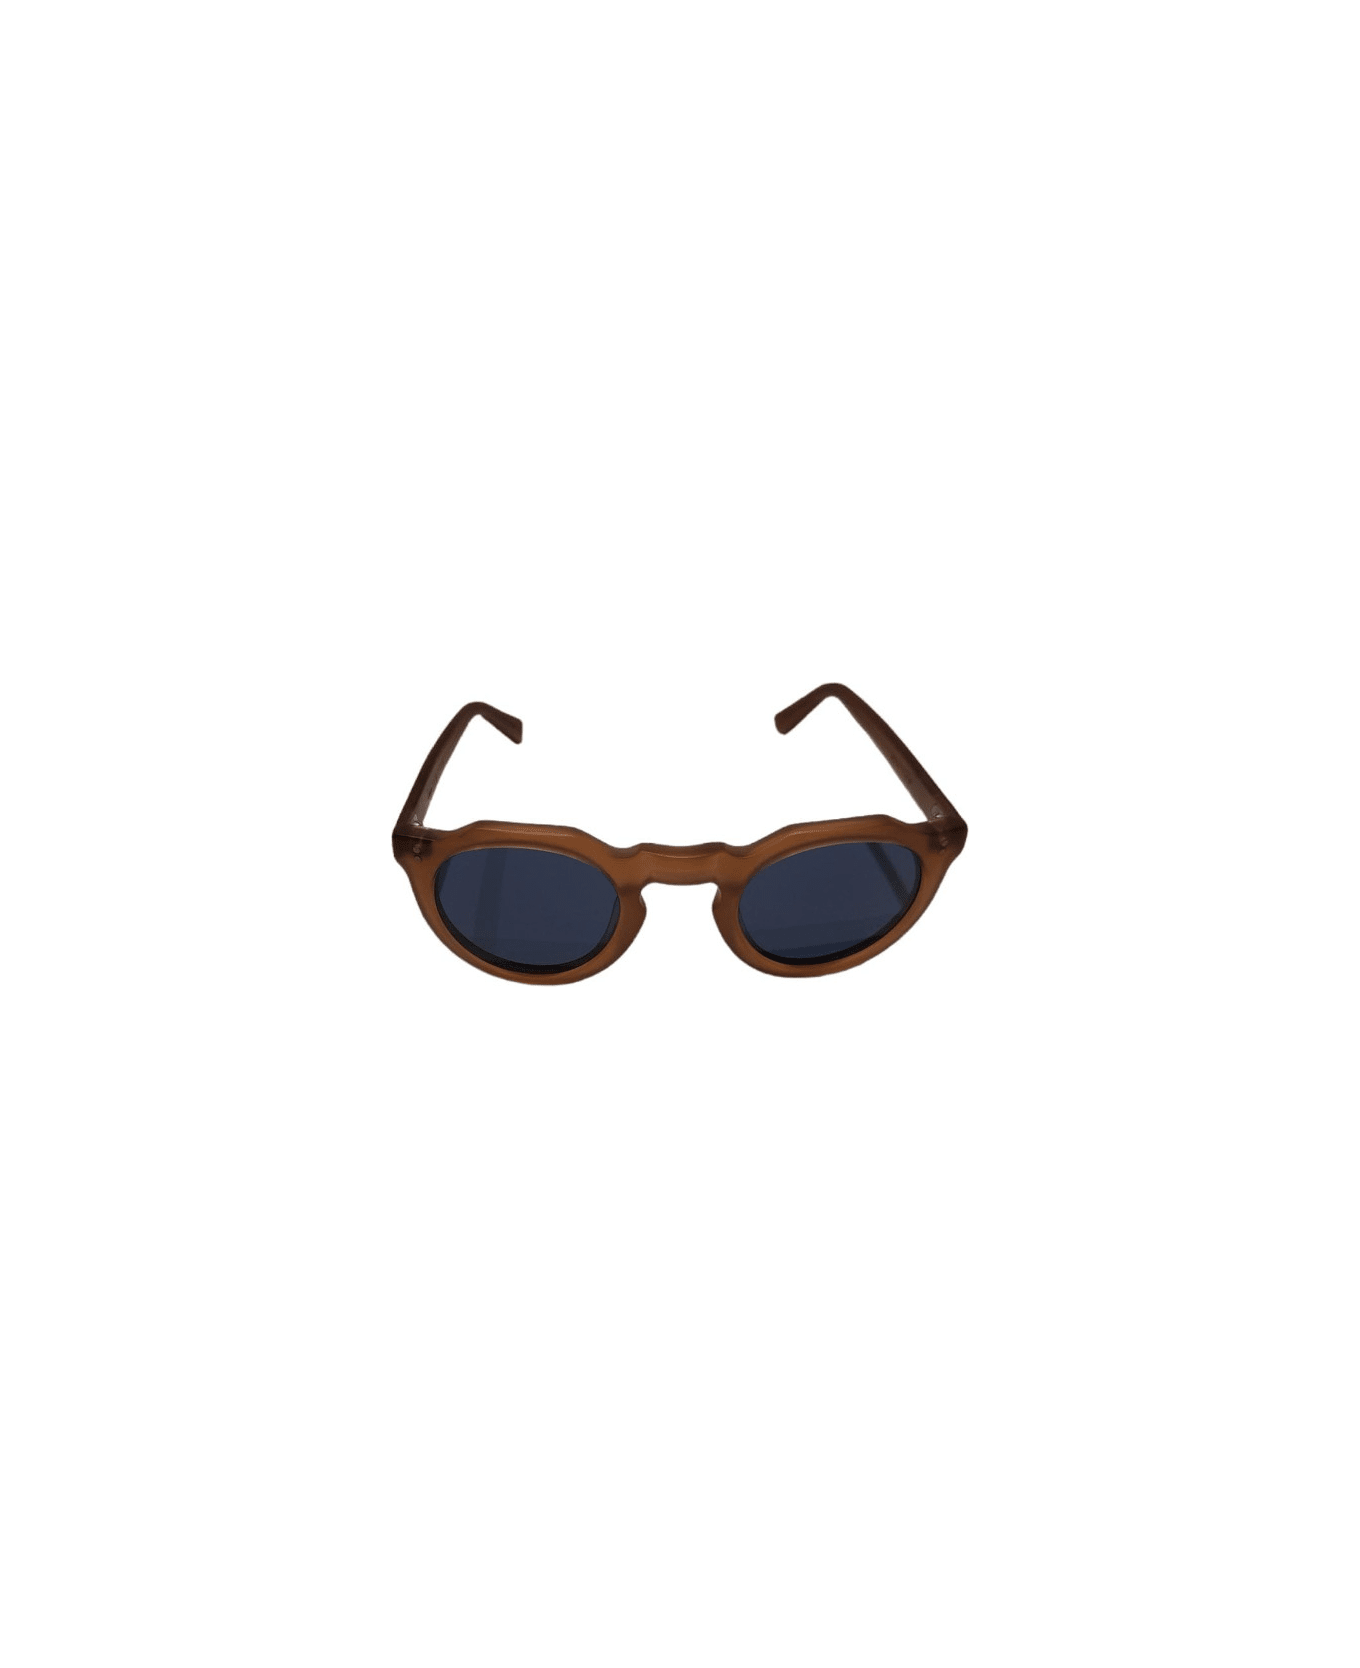 Lesca Picas COM Sunglasses - Cognac matt サングラス